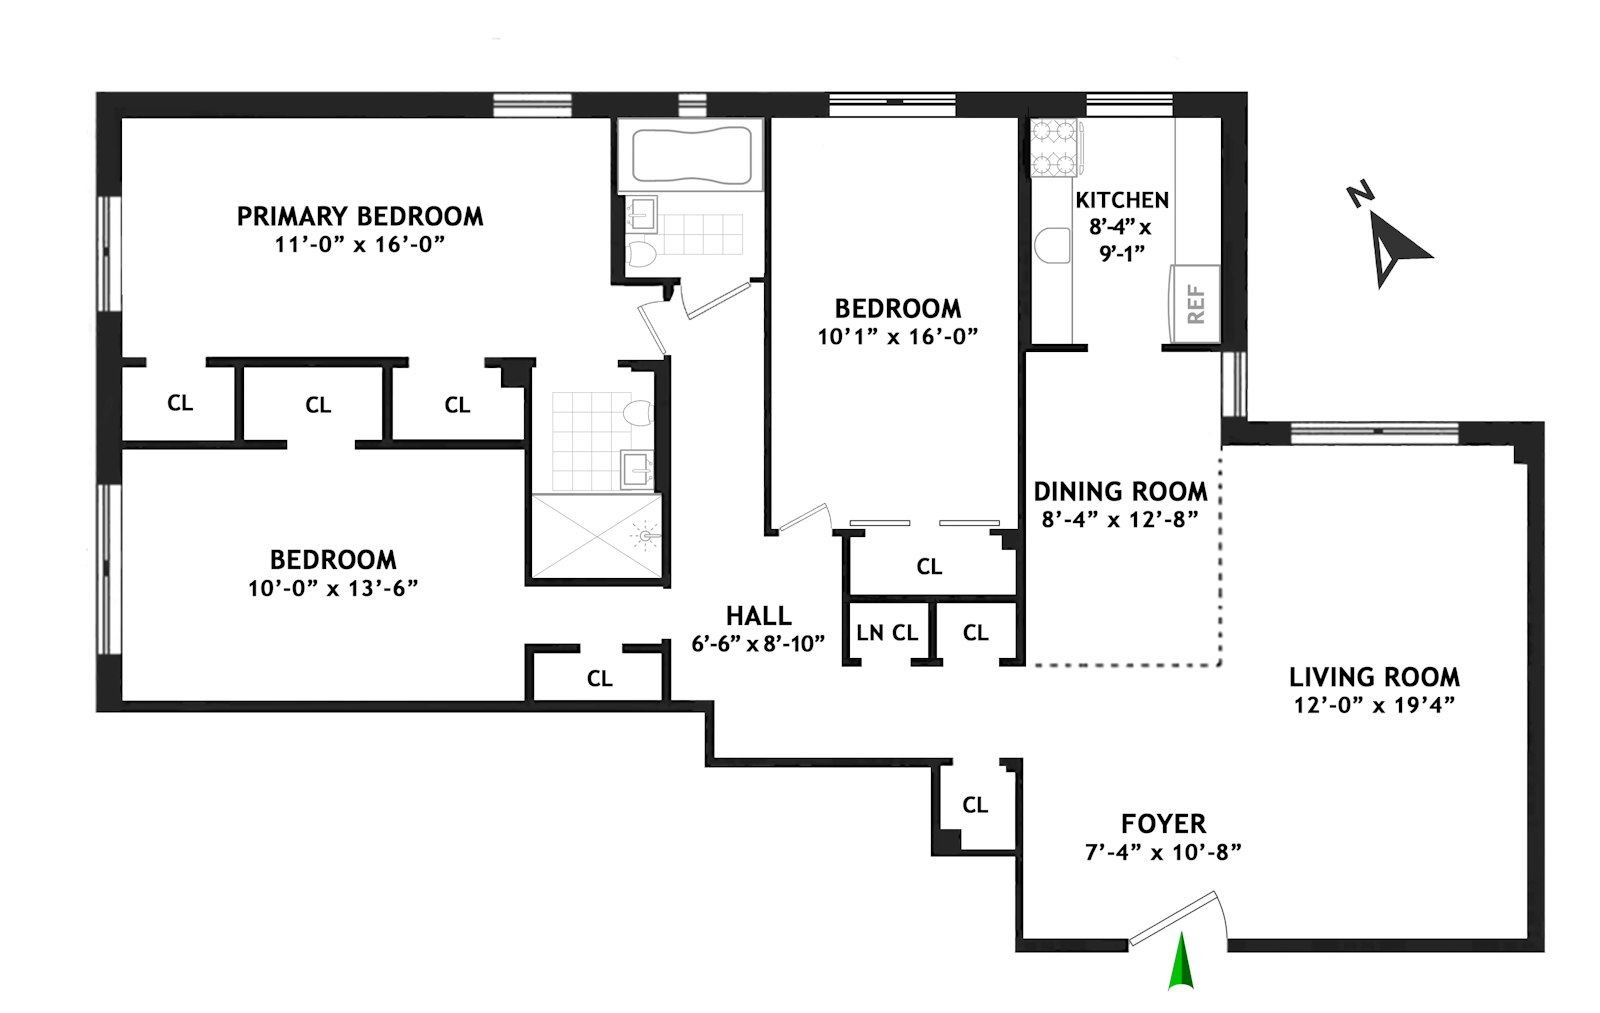 Floorplan for 66 Overlook Terrace, 7L